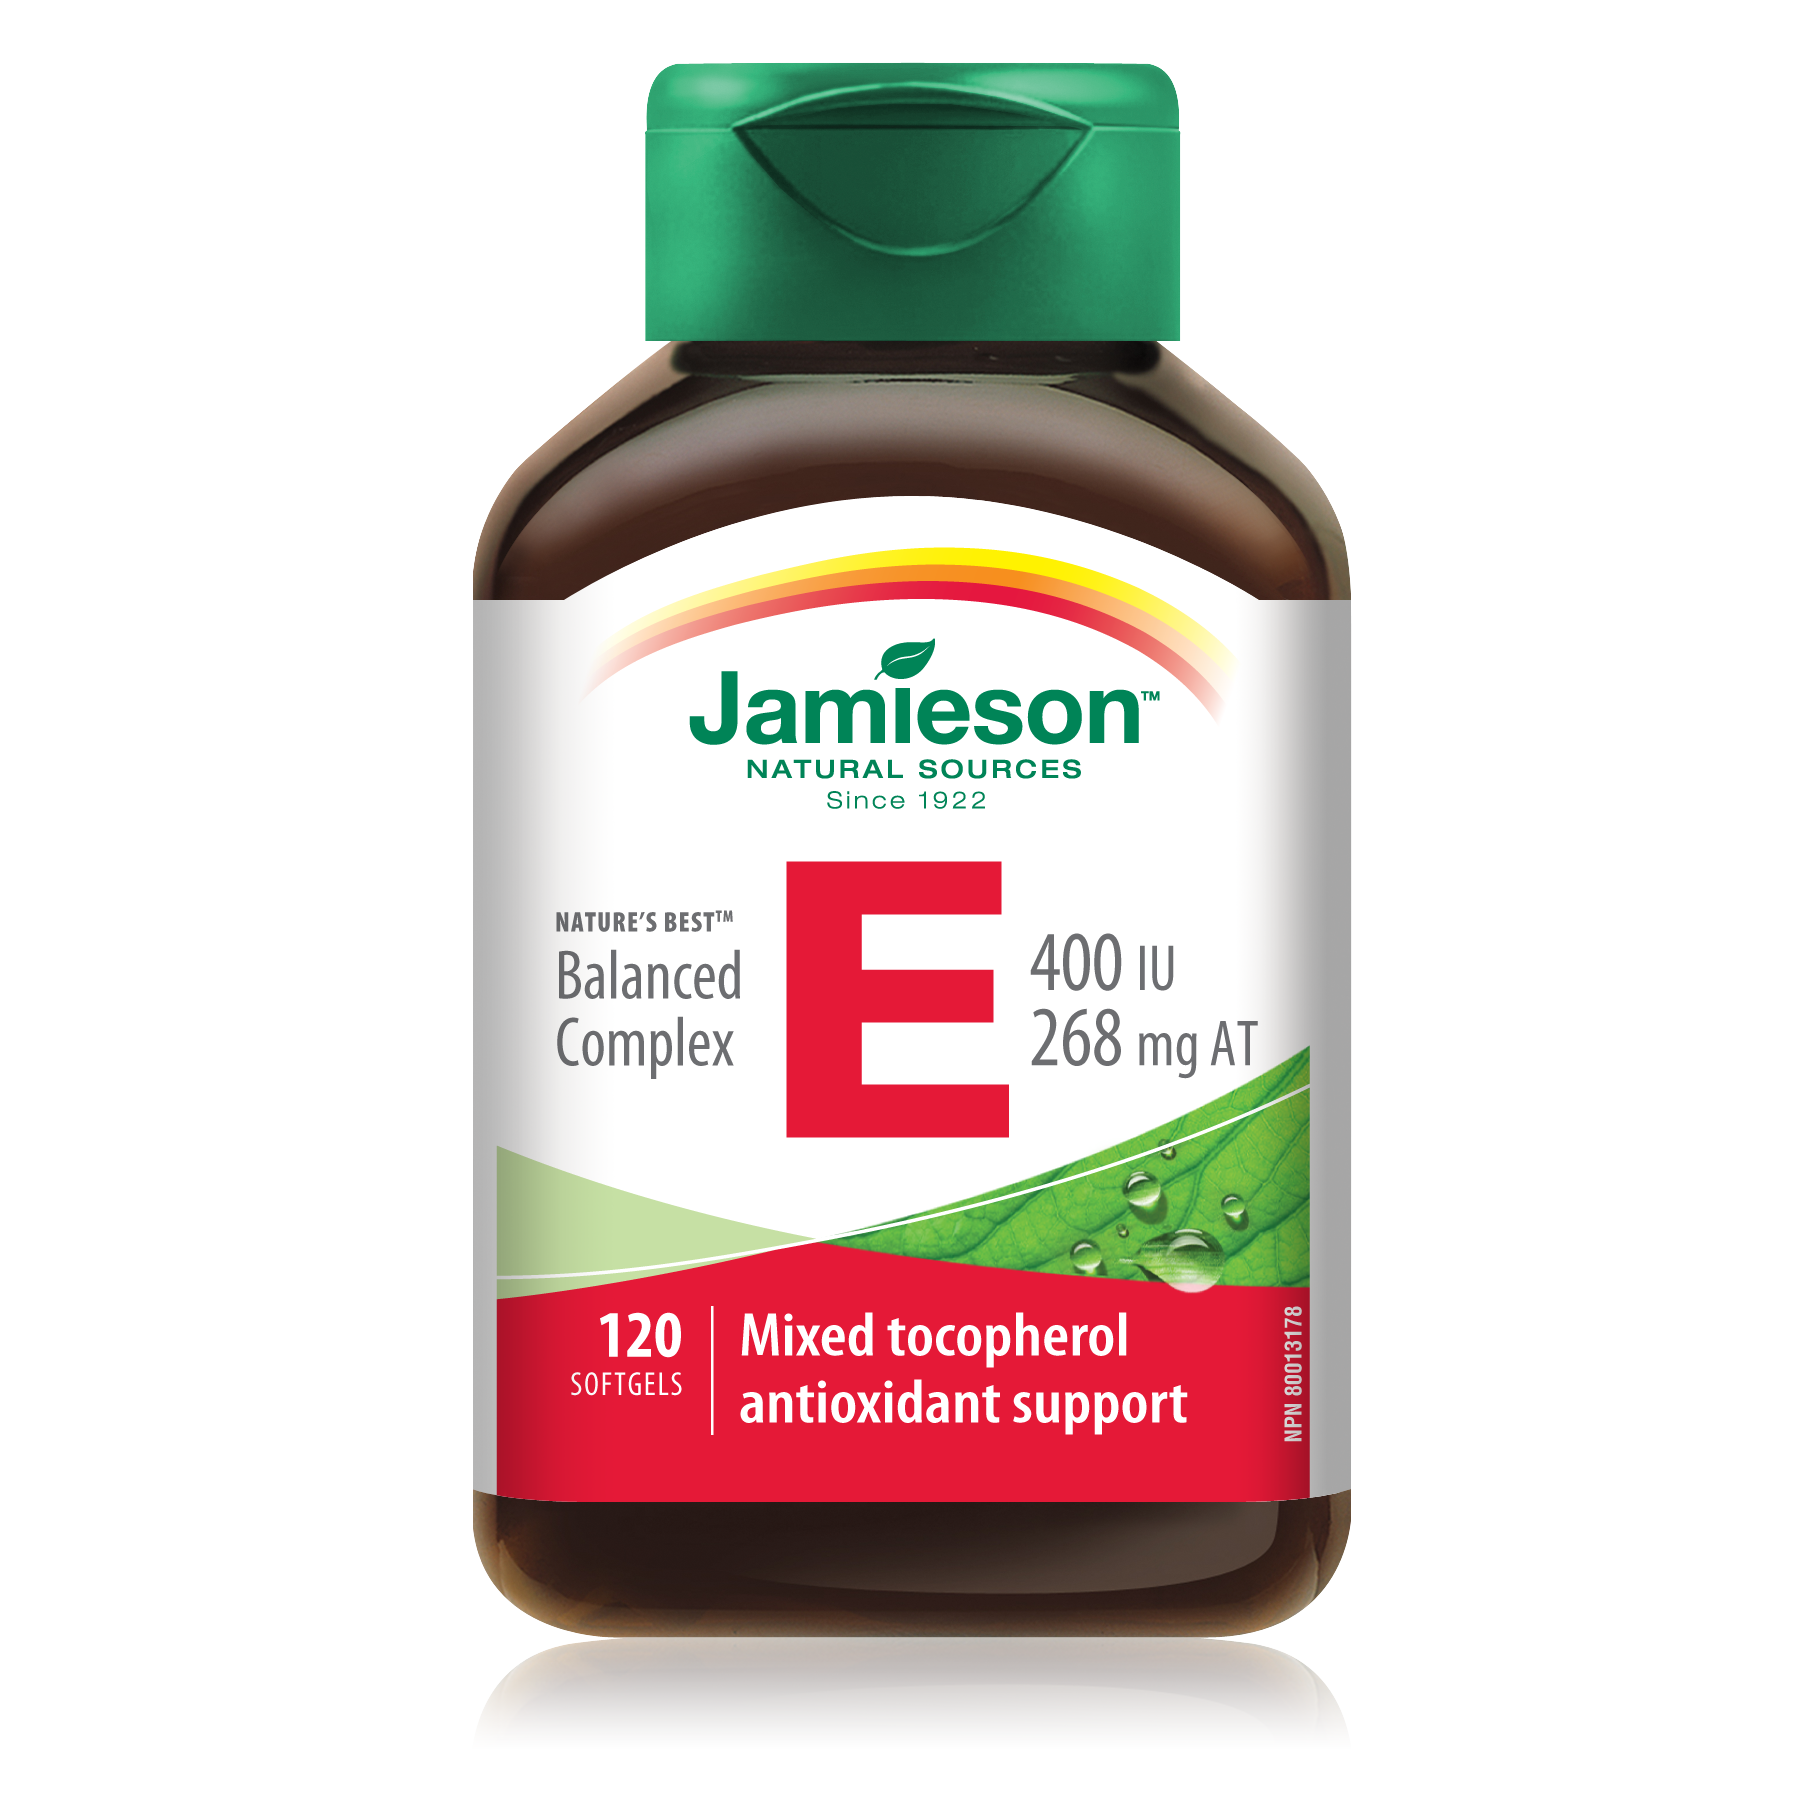 Jamieson Vitamin E Premium Extra Strength 120 Softgels